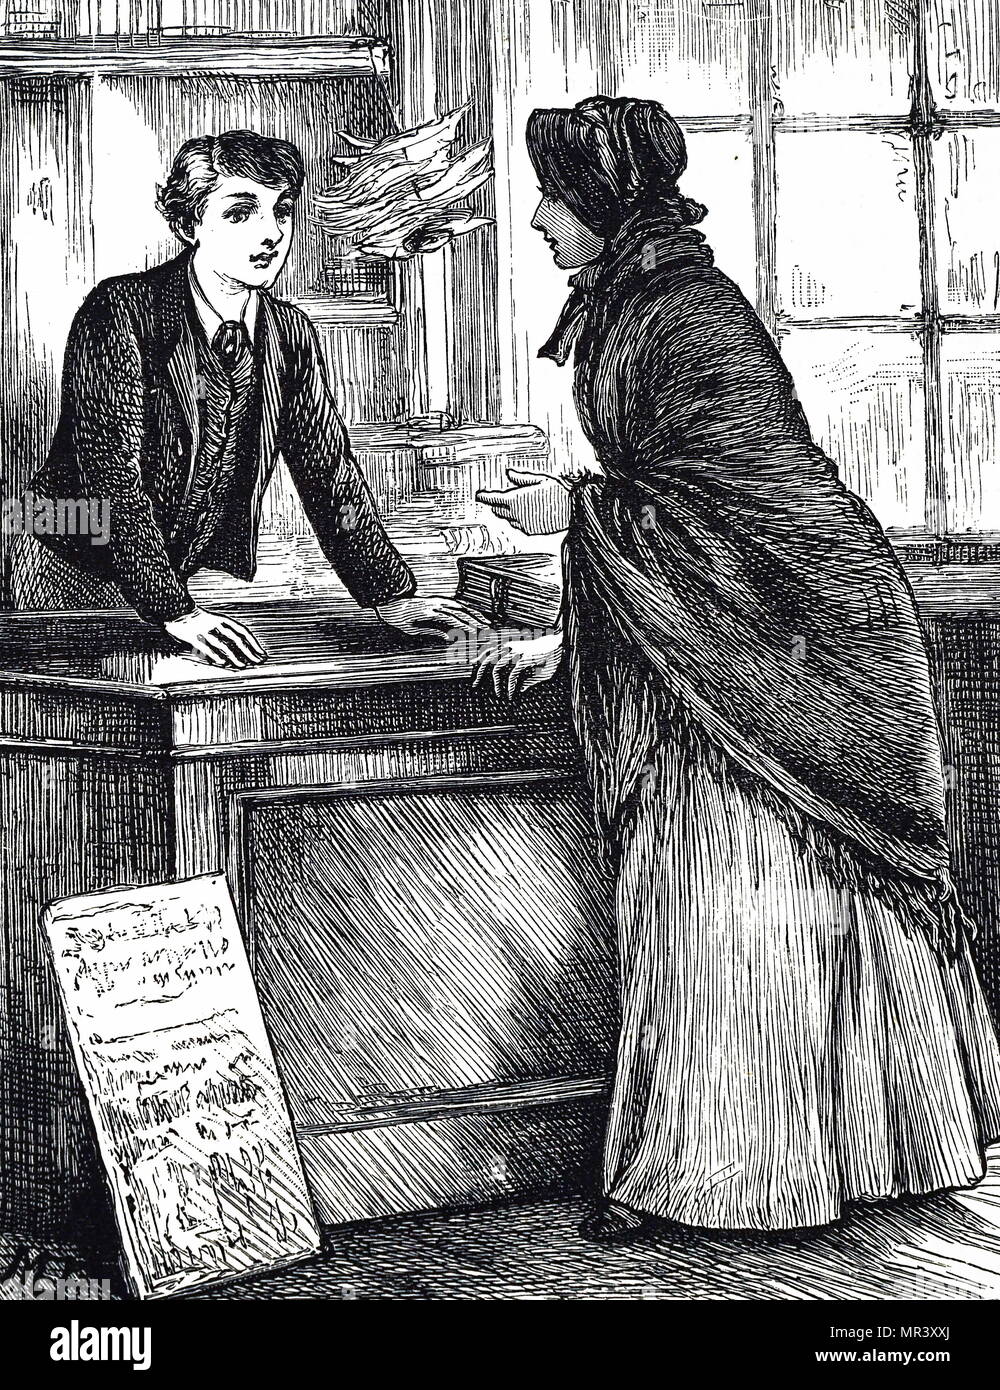 Abbildung: Darstellung einer Frau ein Buch bestellen bei der Buchhändler und der papierladen Shop. Mit Ill. von Mary Ellen Edwards (1838-1934) ein englischer Künstler, der zu vielen viktorianischen Zeitungen und Zeitschriften beigetragen haben, sowie als Illustrator für Kinderbücher. Vom 19. Jahrhundert Stockfoto